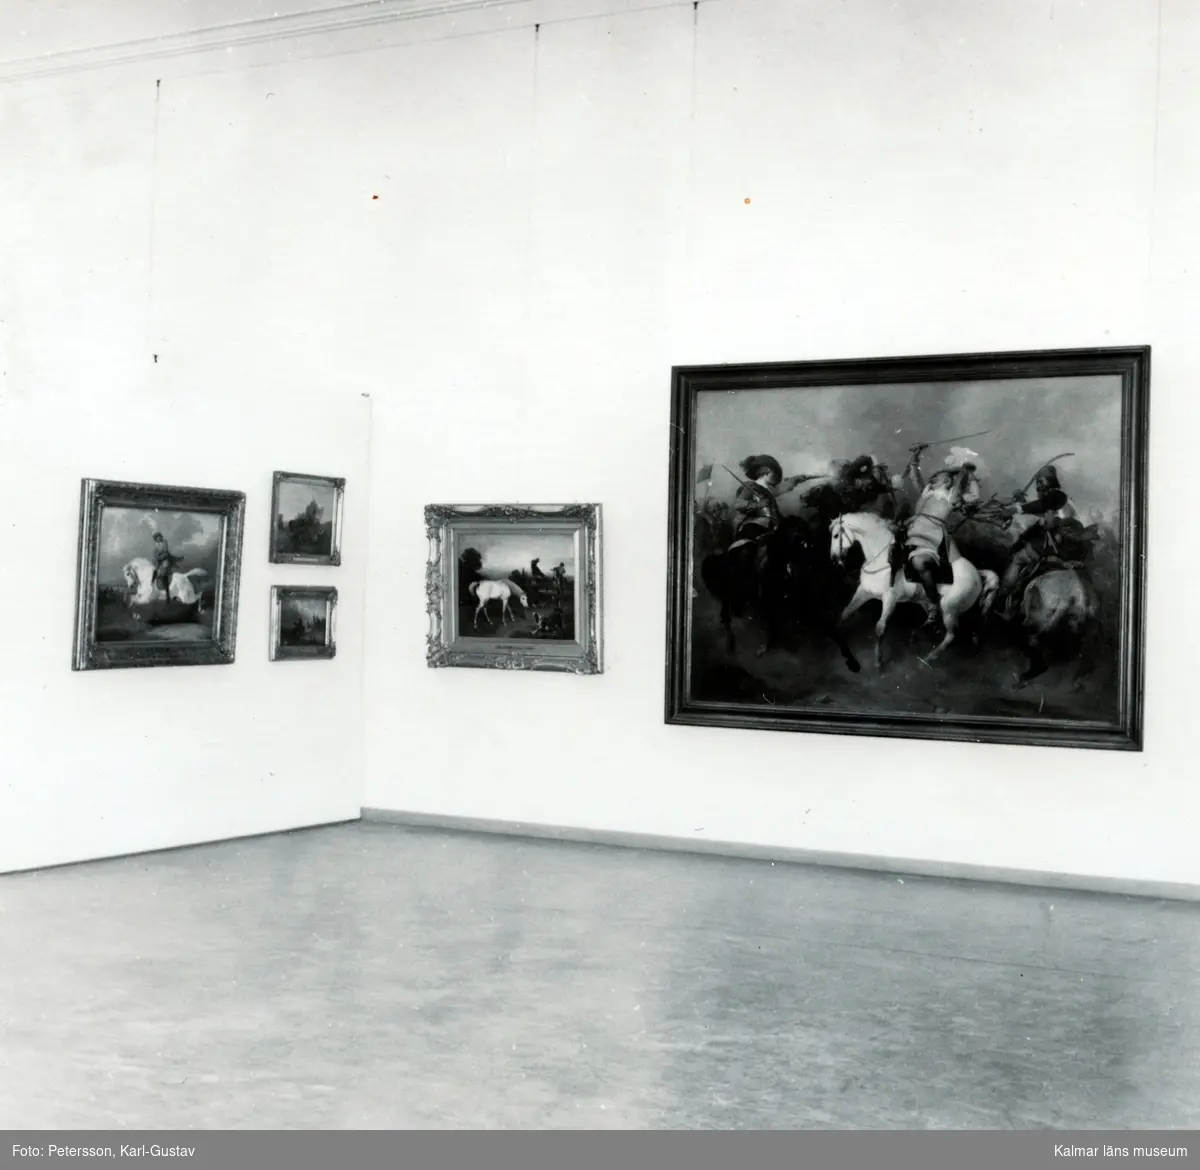 Tillfällig utställning, från Kalmar konstmuseum skärmvägg med tavlor. Wahlbomsutställningen 1958.